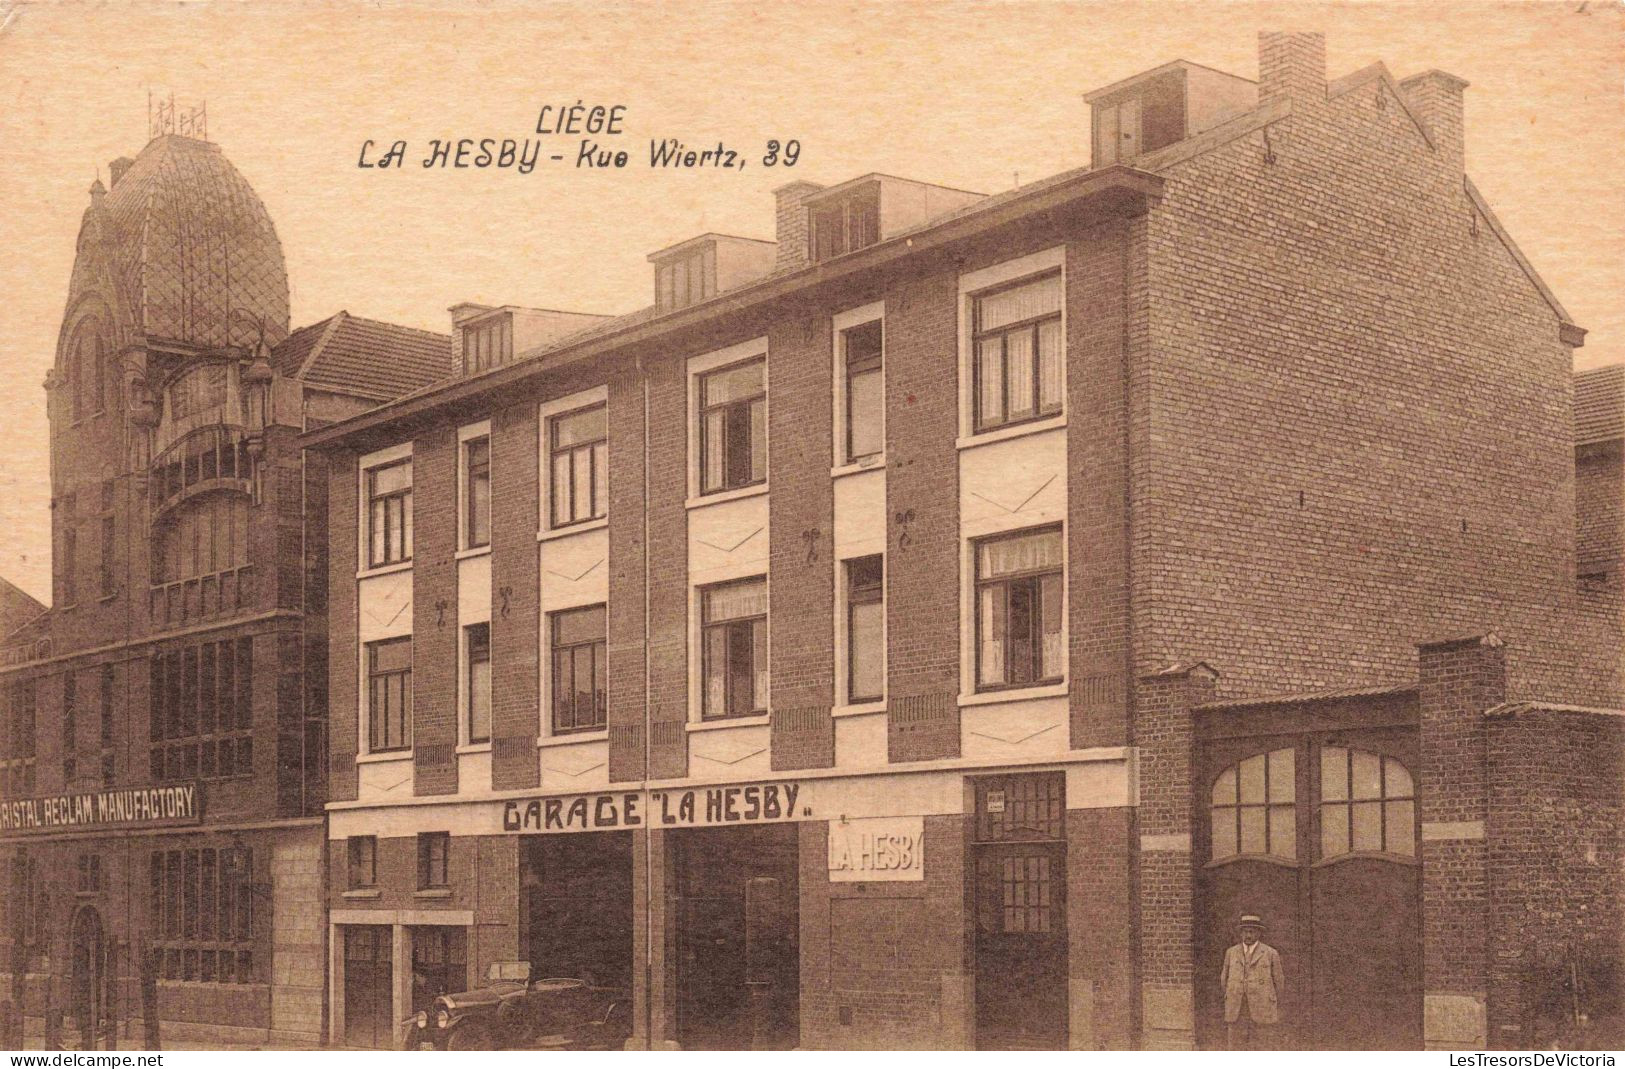 BELGIQUE - Liège - La Hesby - Kue Wiertz, 39 - Garage - Carte Postale Ancienne - Liège